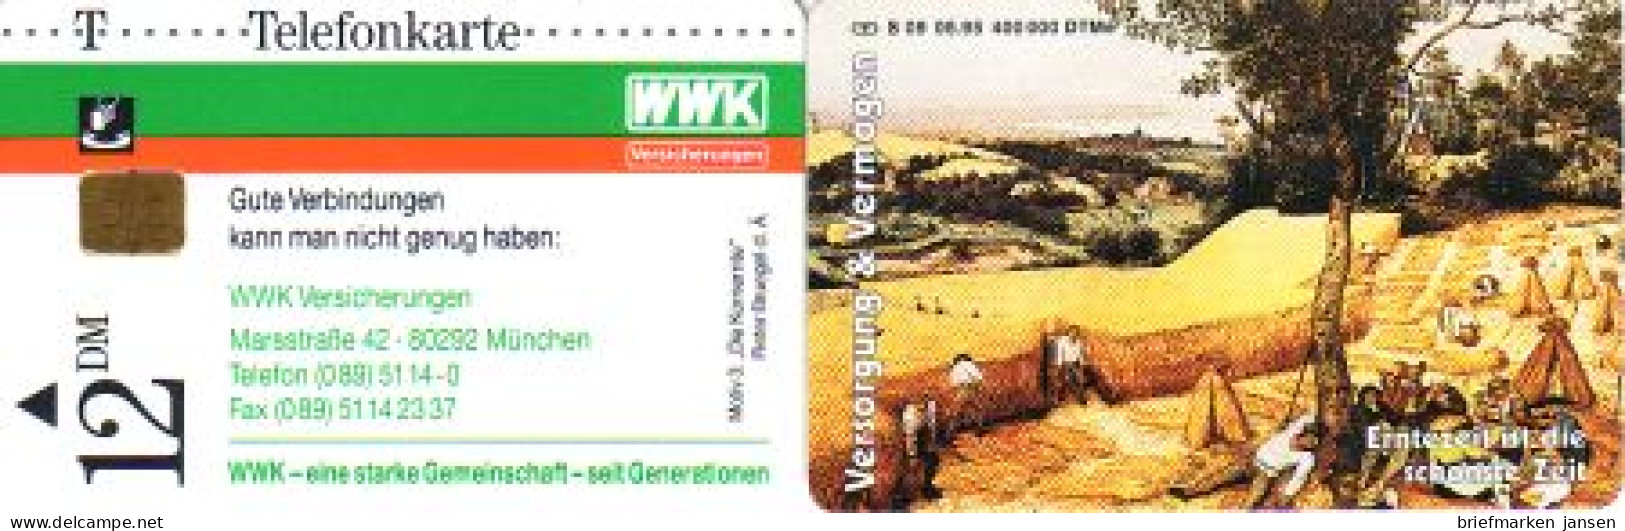 Telefonkarte S 09 05.95 WWK Versicherungen Erntezeit (III), DD 1506 - Sin Clasificación